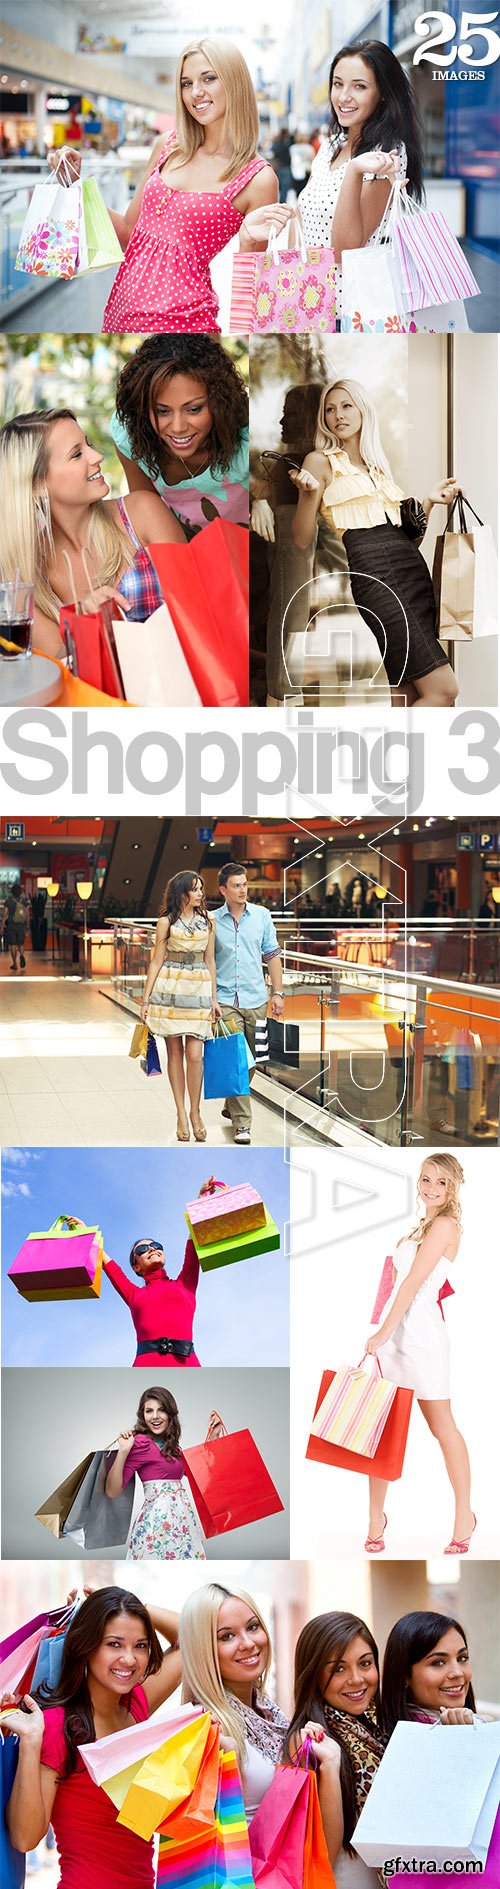 Shopping Collection 3, 25xJPG